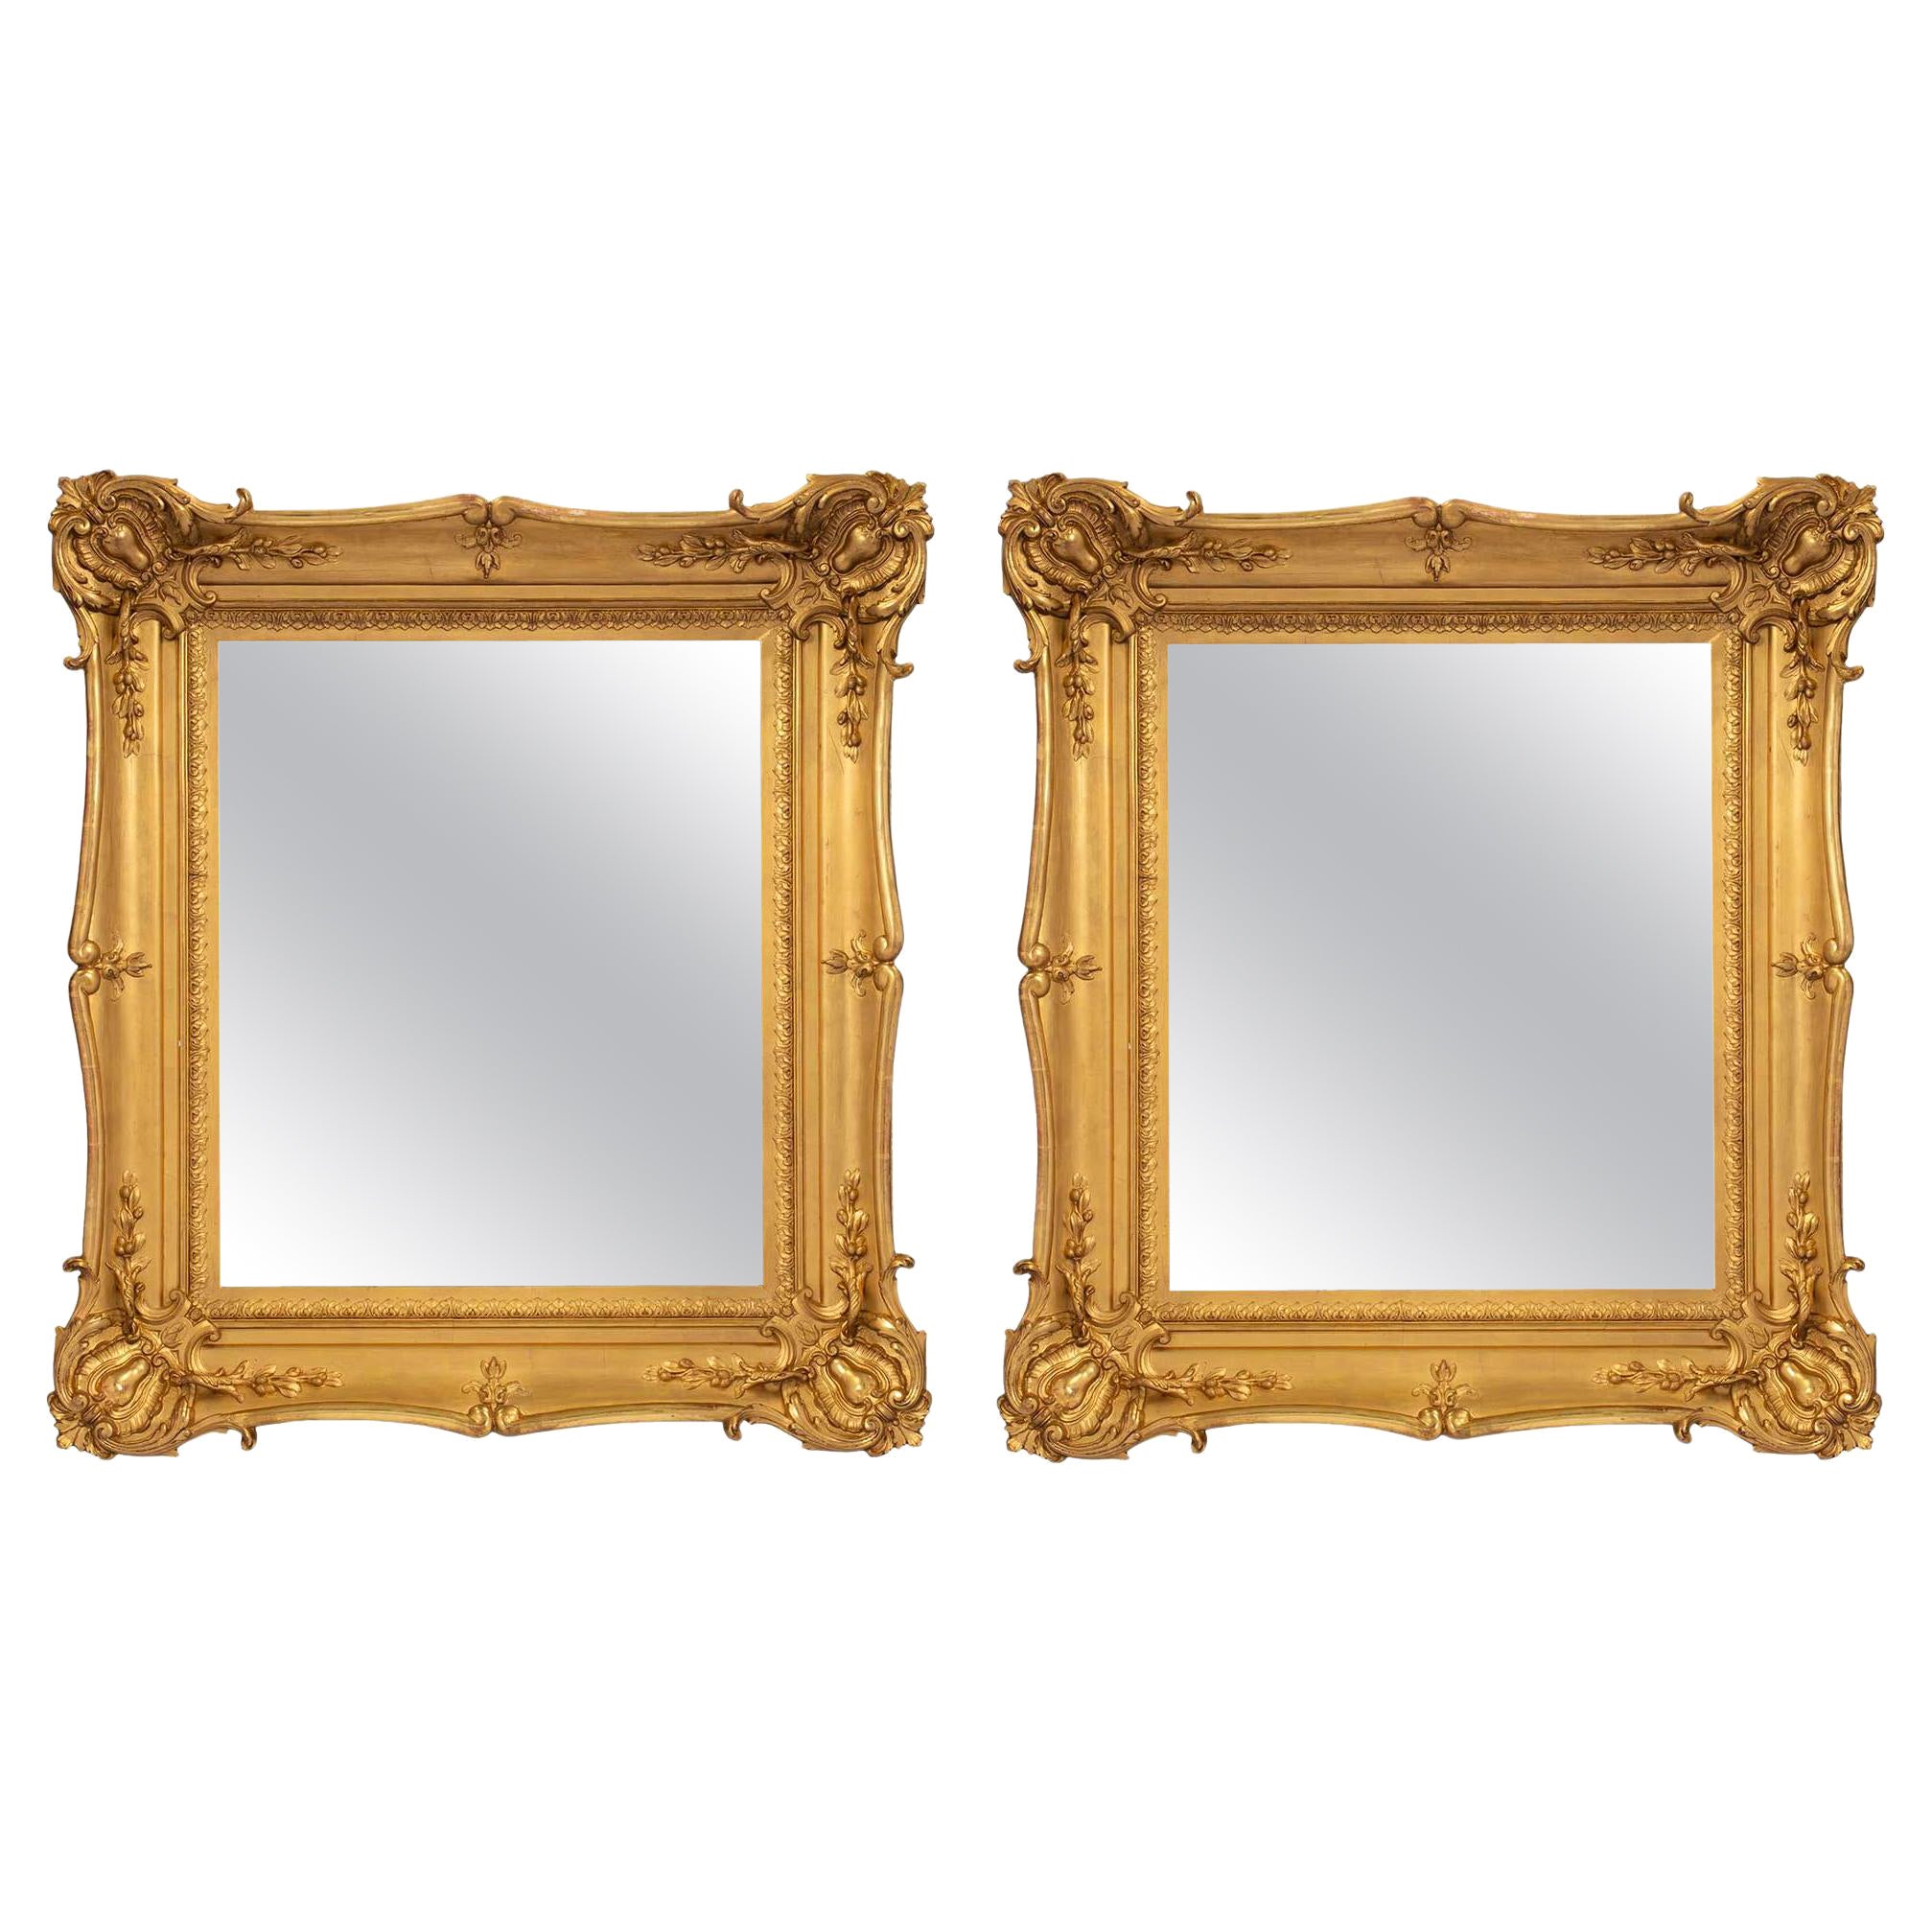 Spiegel aus vergoldetem Holz, Französisch, 19. Jahrhundert, Louis XV.-Stil